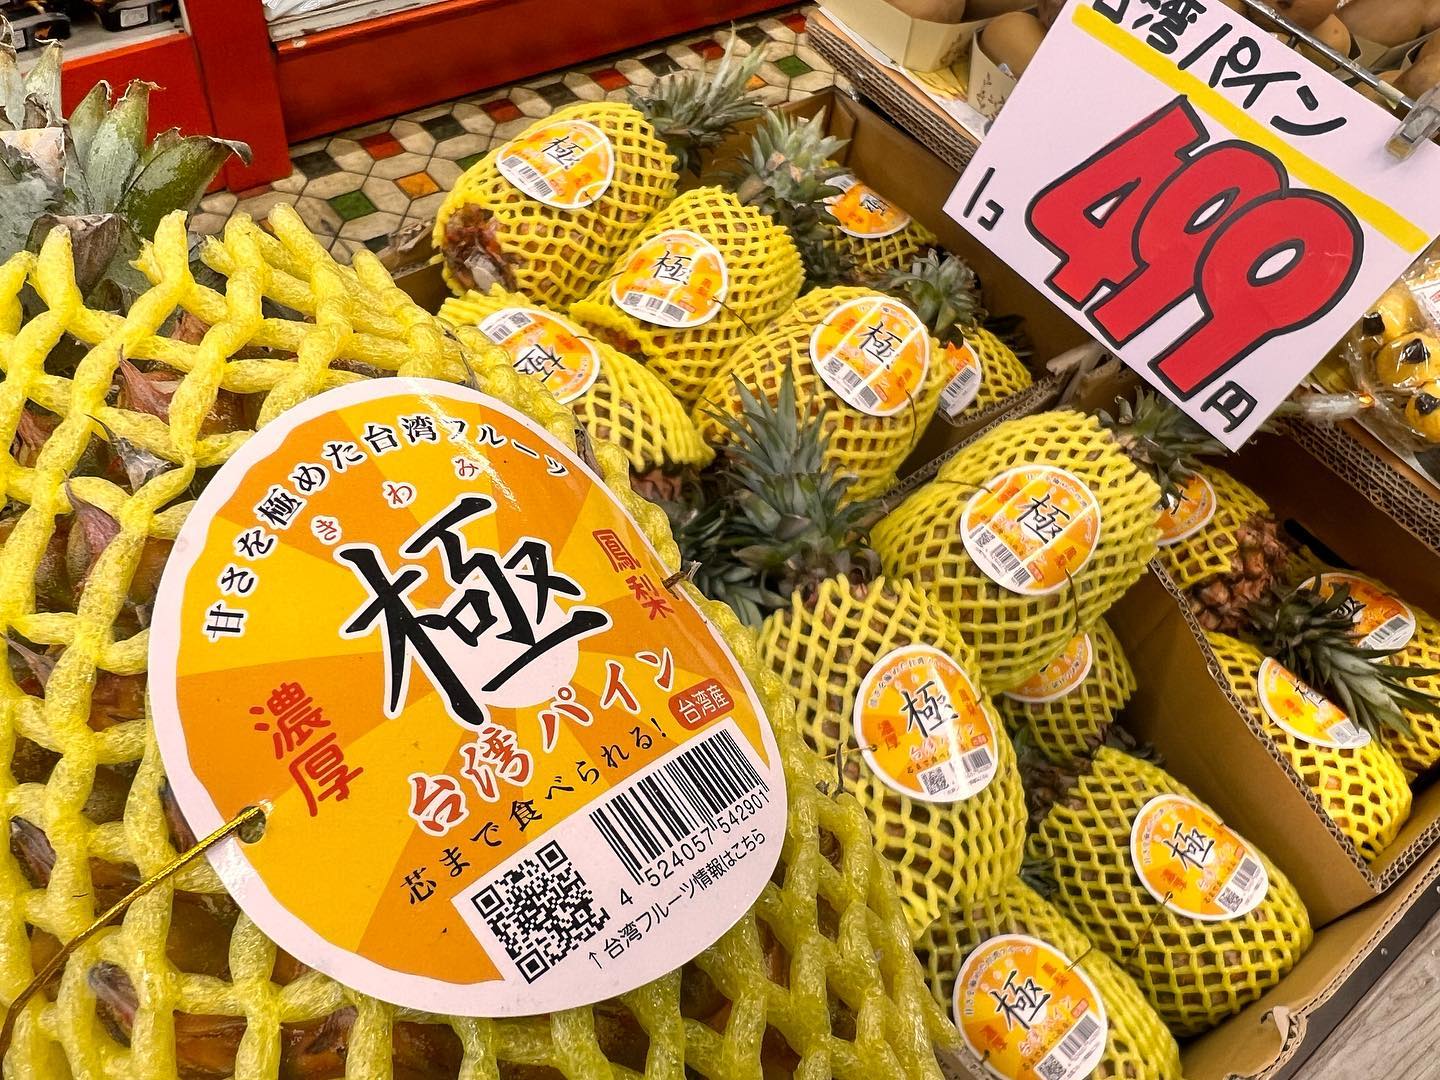 甘さを極めた台湾フルーツ
芯まで食べられる
台湾パイン『極（きわみ）』